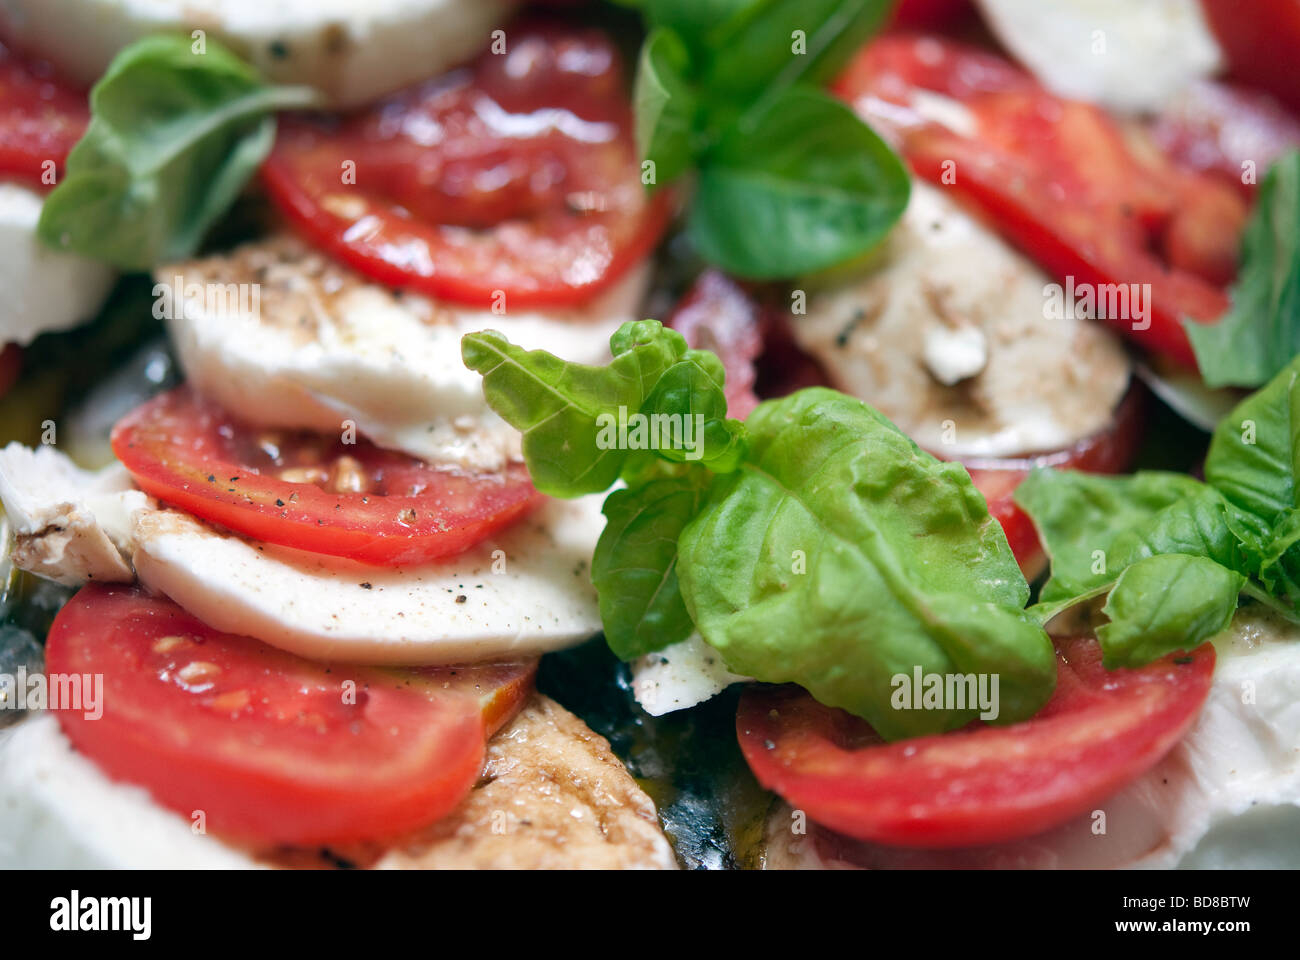 La tomate, mozzarella et basilic frais buffolo, salés et éclaboussé de balsamo le vinaigre et l'huile d'olive extra vierge - salade caprese Banque D'Images